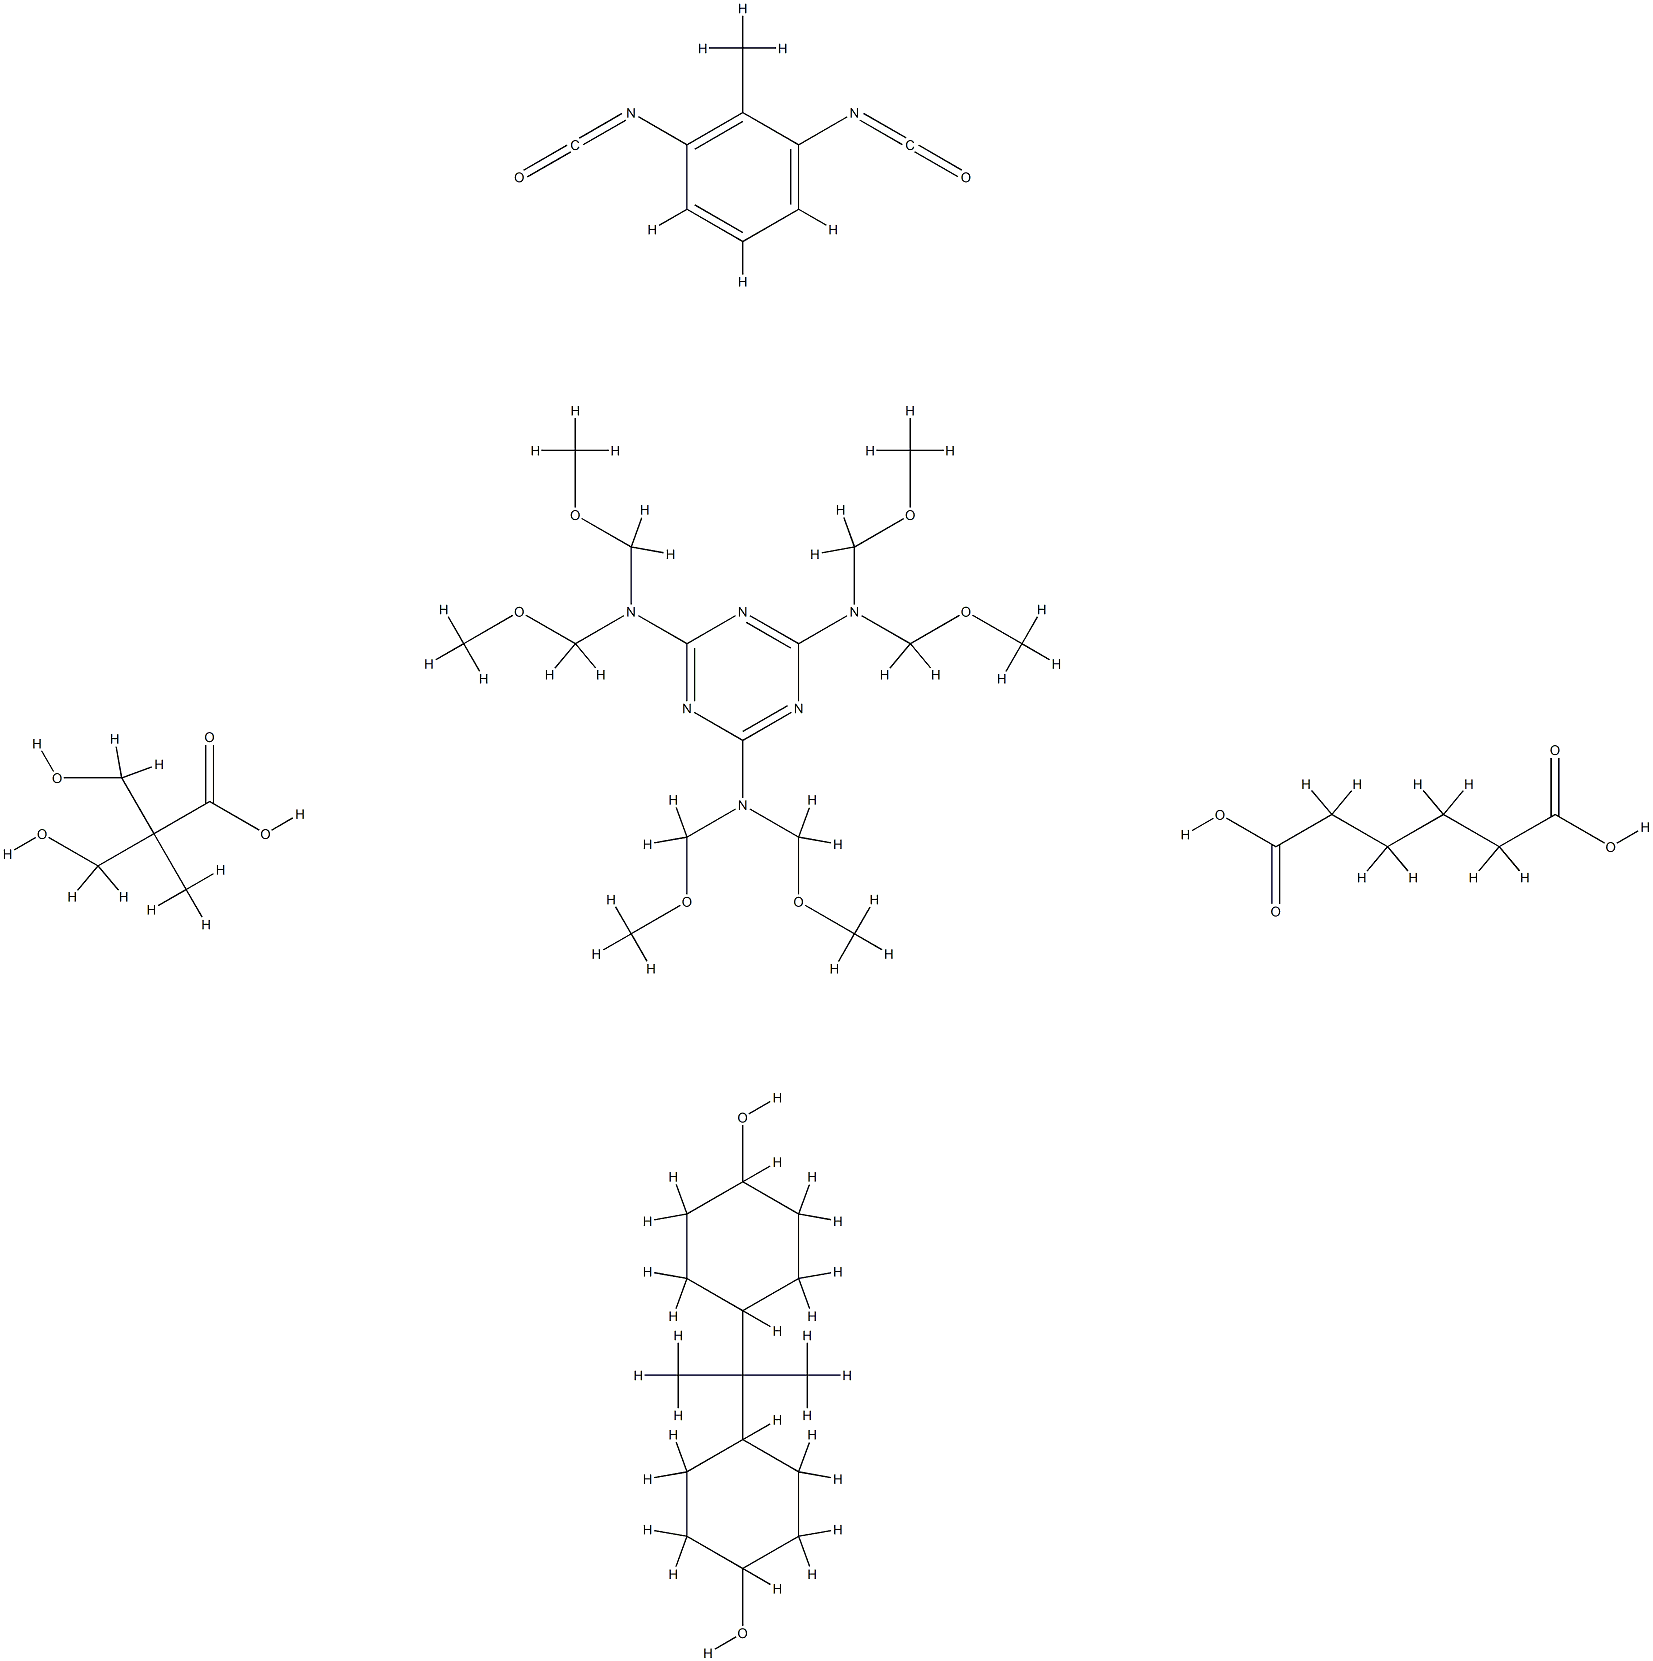 Hexanedioic acid, polymer with 1,3-diisocyanatomethylbenzene, N,N,N',N',N'',N''-hexakis( methoxymethyl)-1,3,5-triazine-2,4,6-triamine, 3-hydroxy-2-(hydroxymethyl)-2-methylpropanoic acid and 4,4'-(1-methylethylidene)bis[cyclohexanol]|